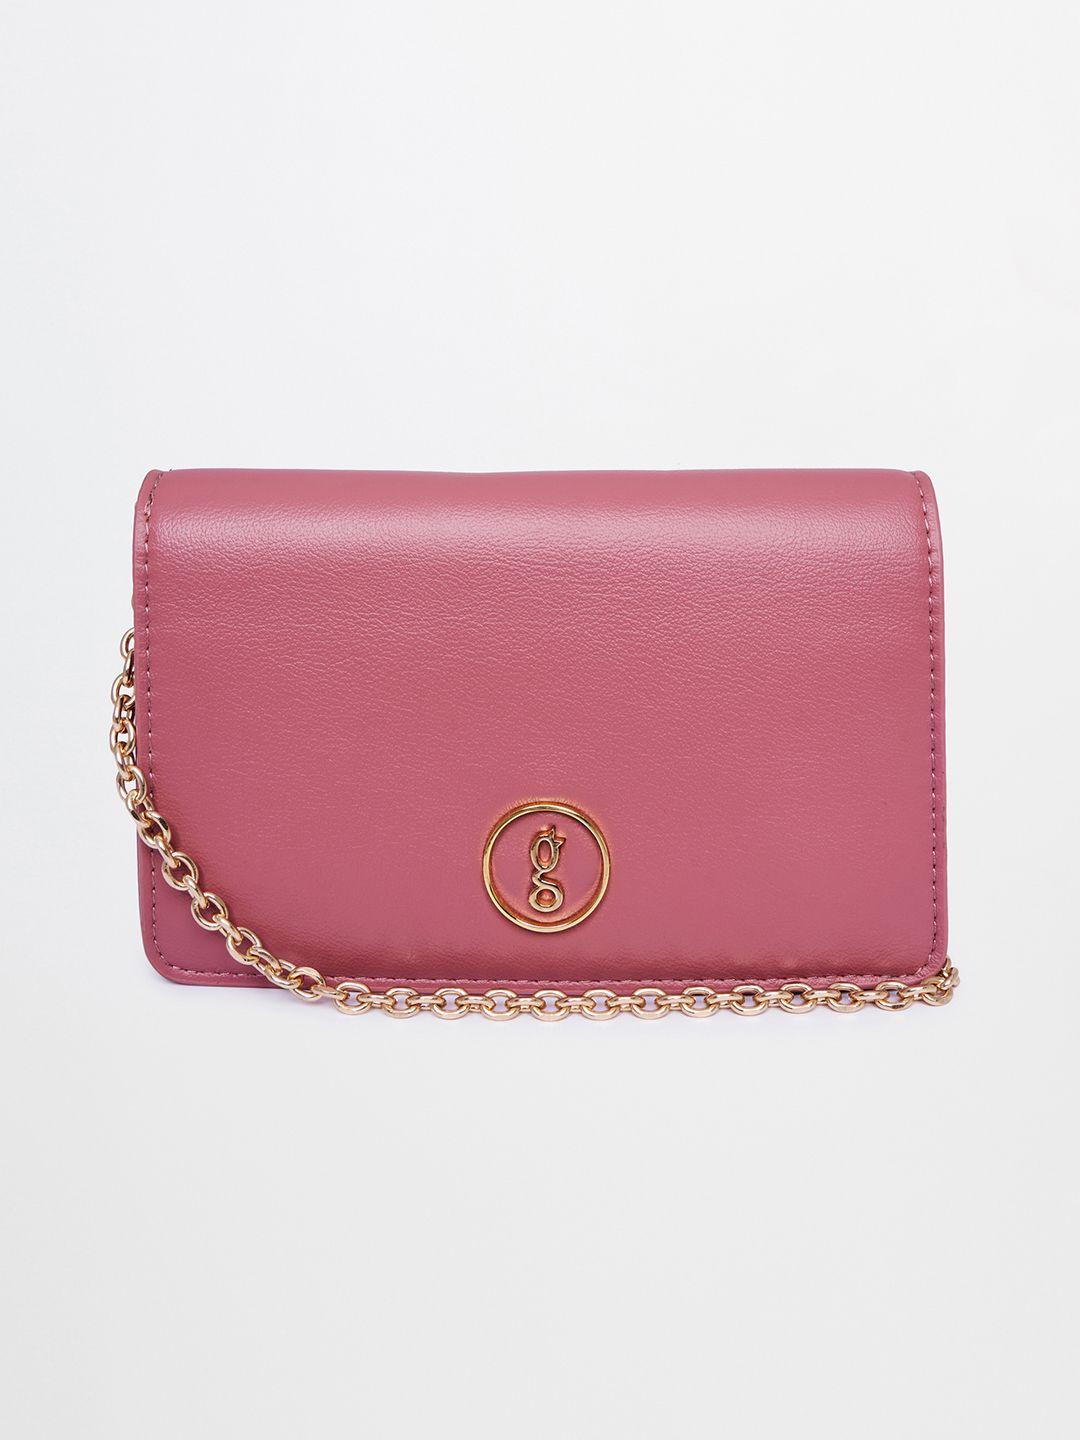 global desi pink embellished structured handheld bag